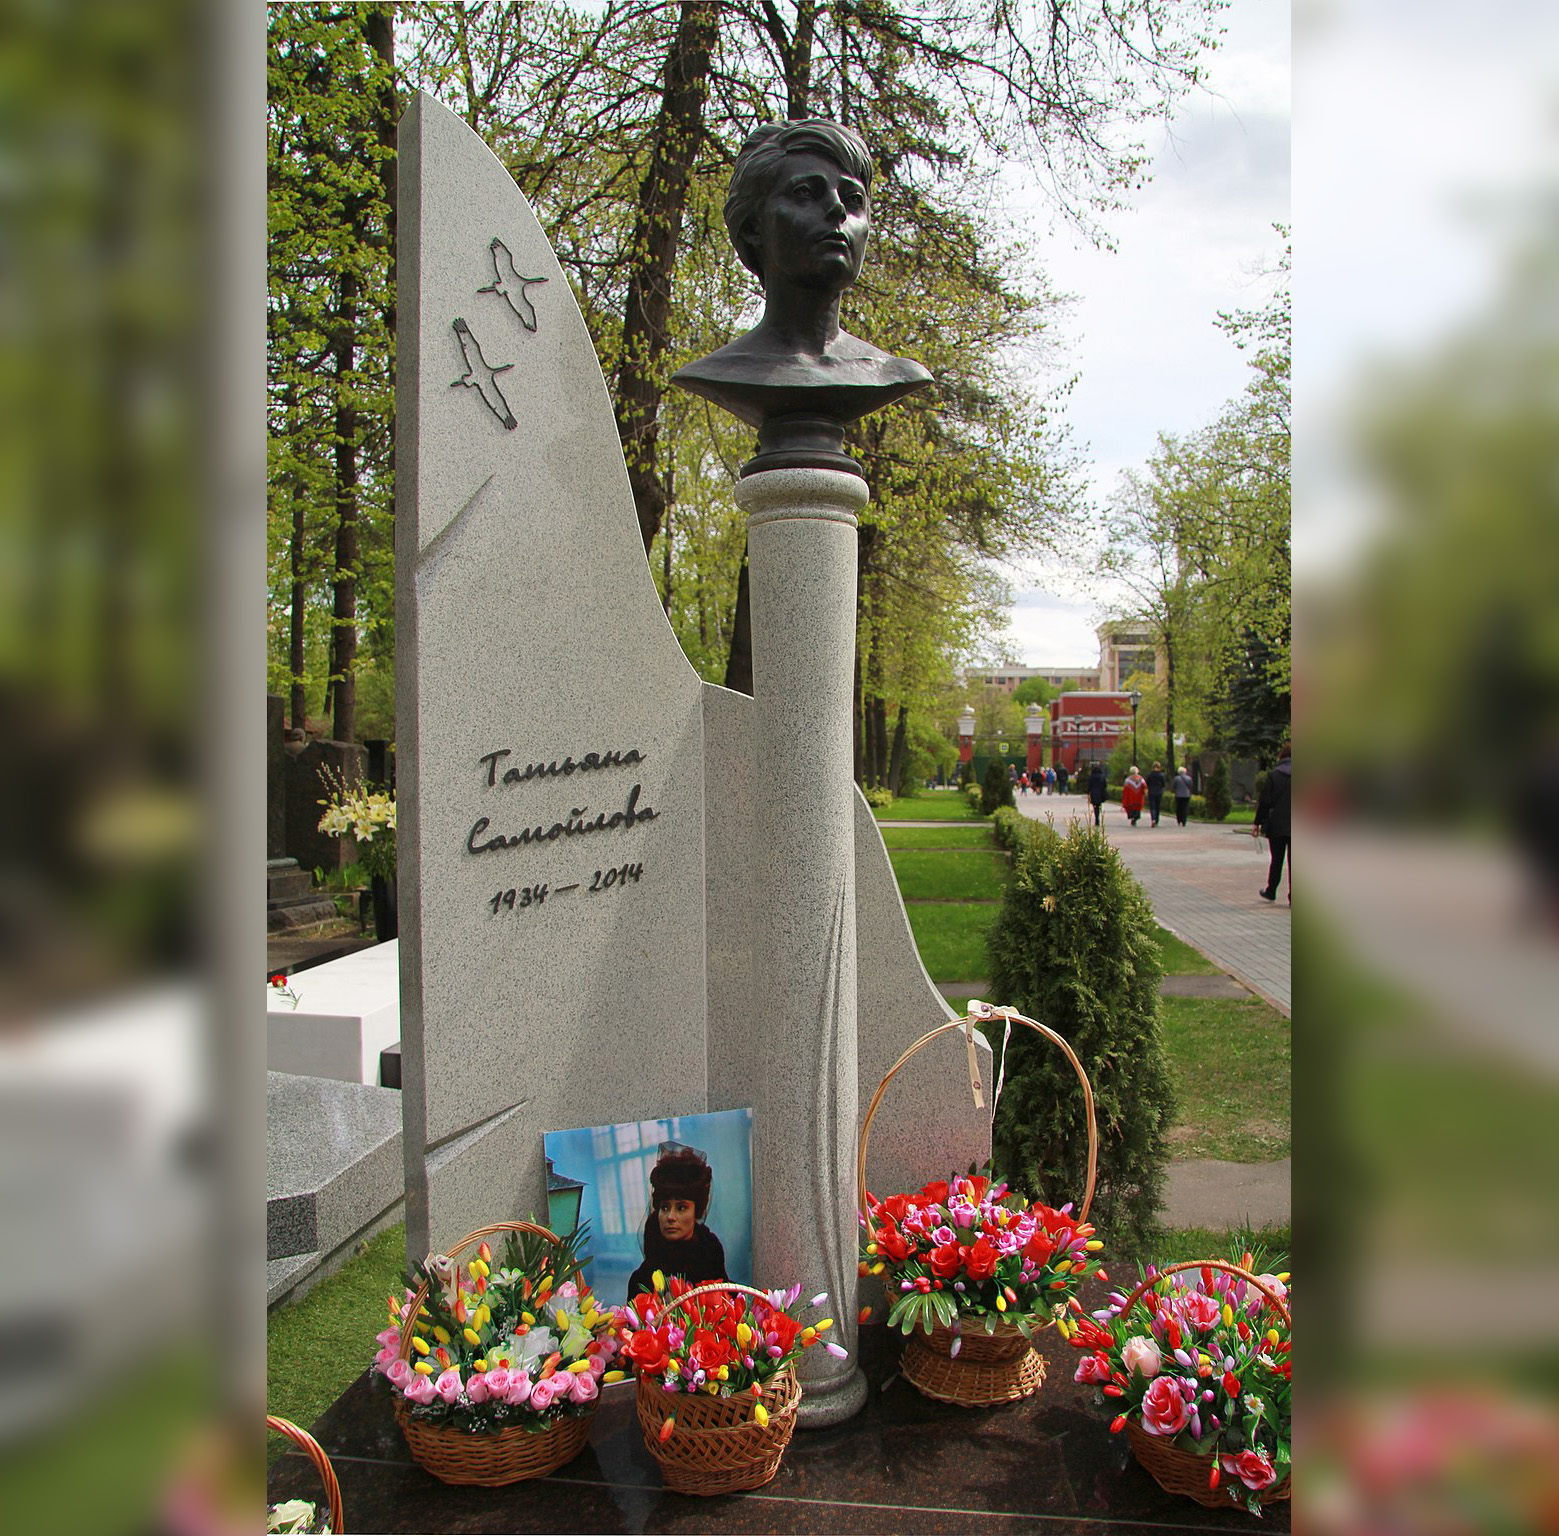 Памятник актрисе Татьяне Самойловой на Новодевичьем кладбище в Москве обошёлся в 3,8 млн рублей. Фото © Wikipdia